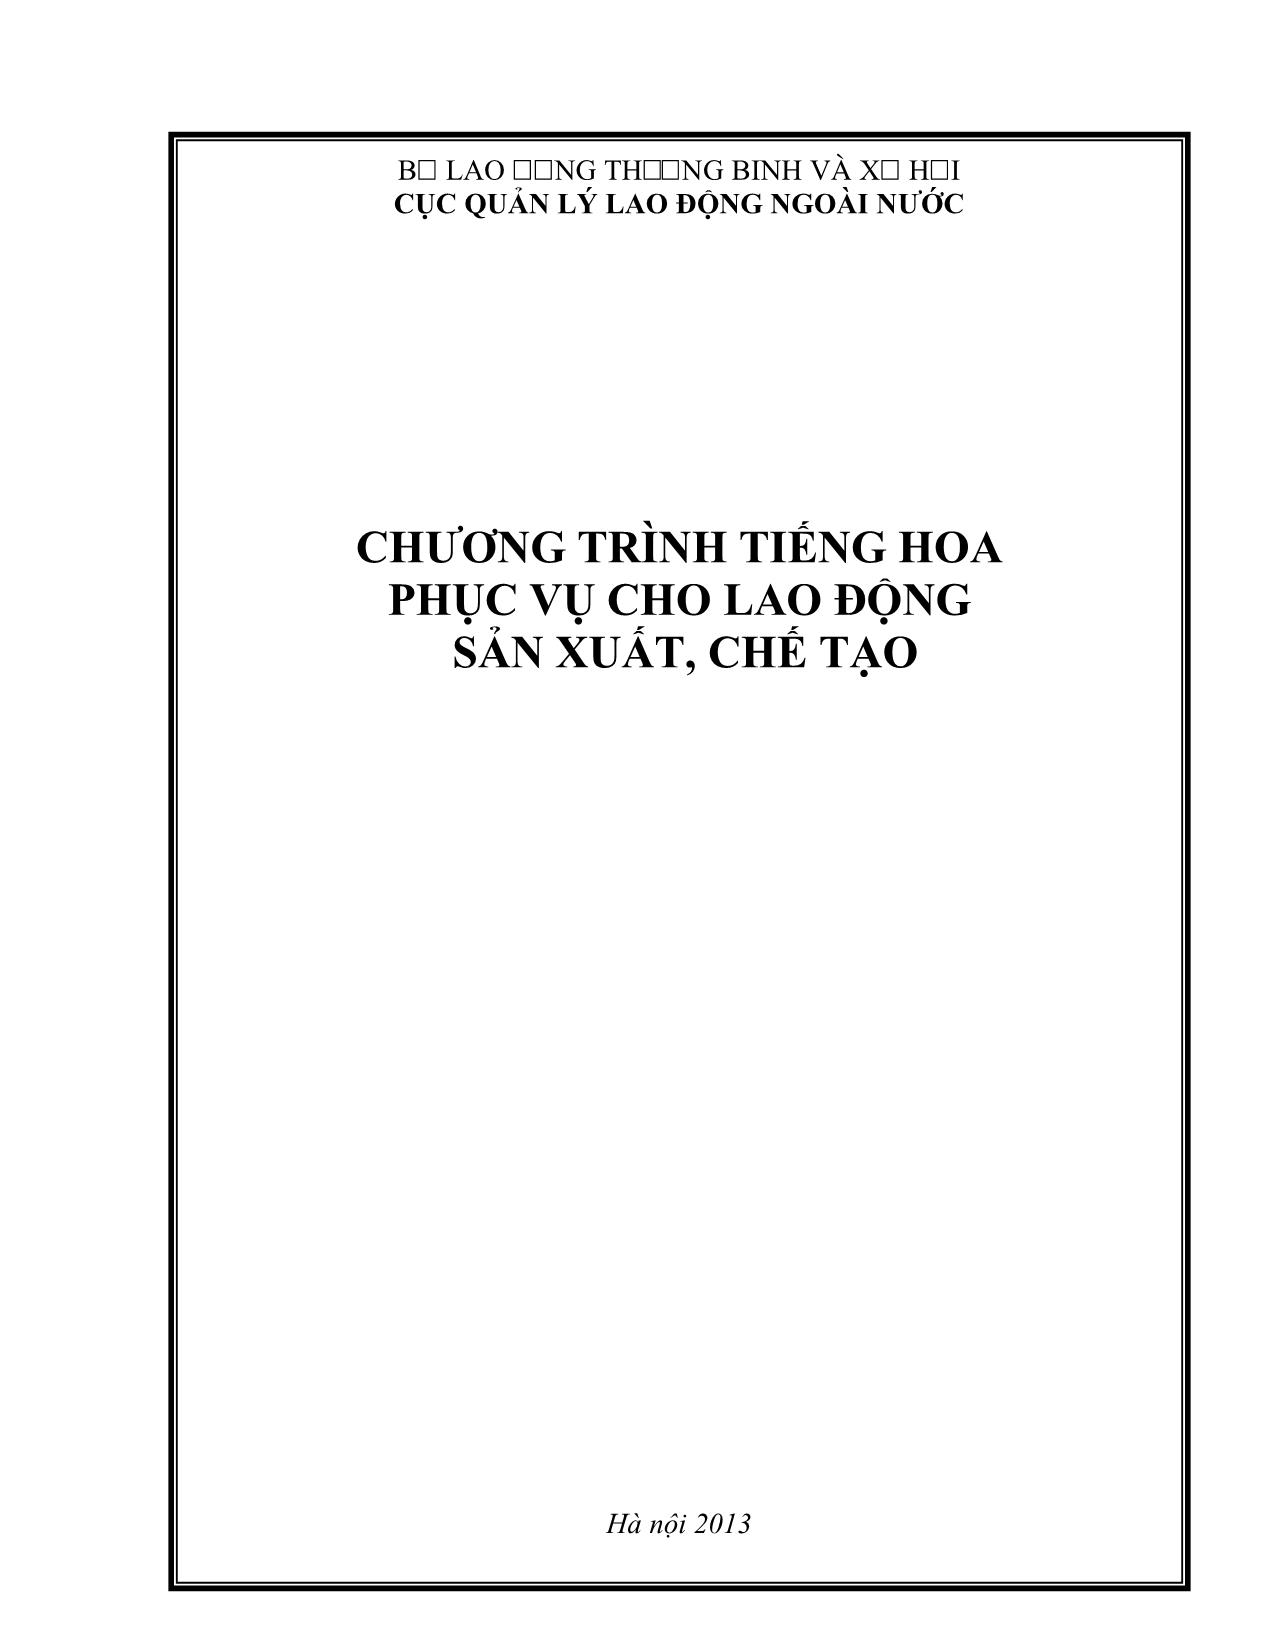 Giáo trình Chương trình tiếng Hoa phục vụ cho lao động sản xuất, chế tạo trang 1